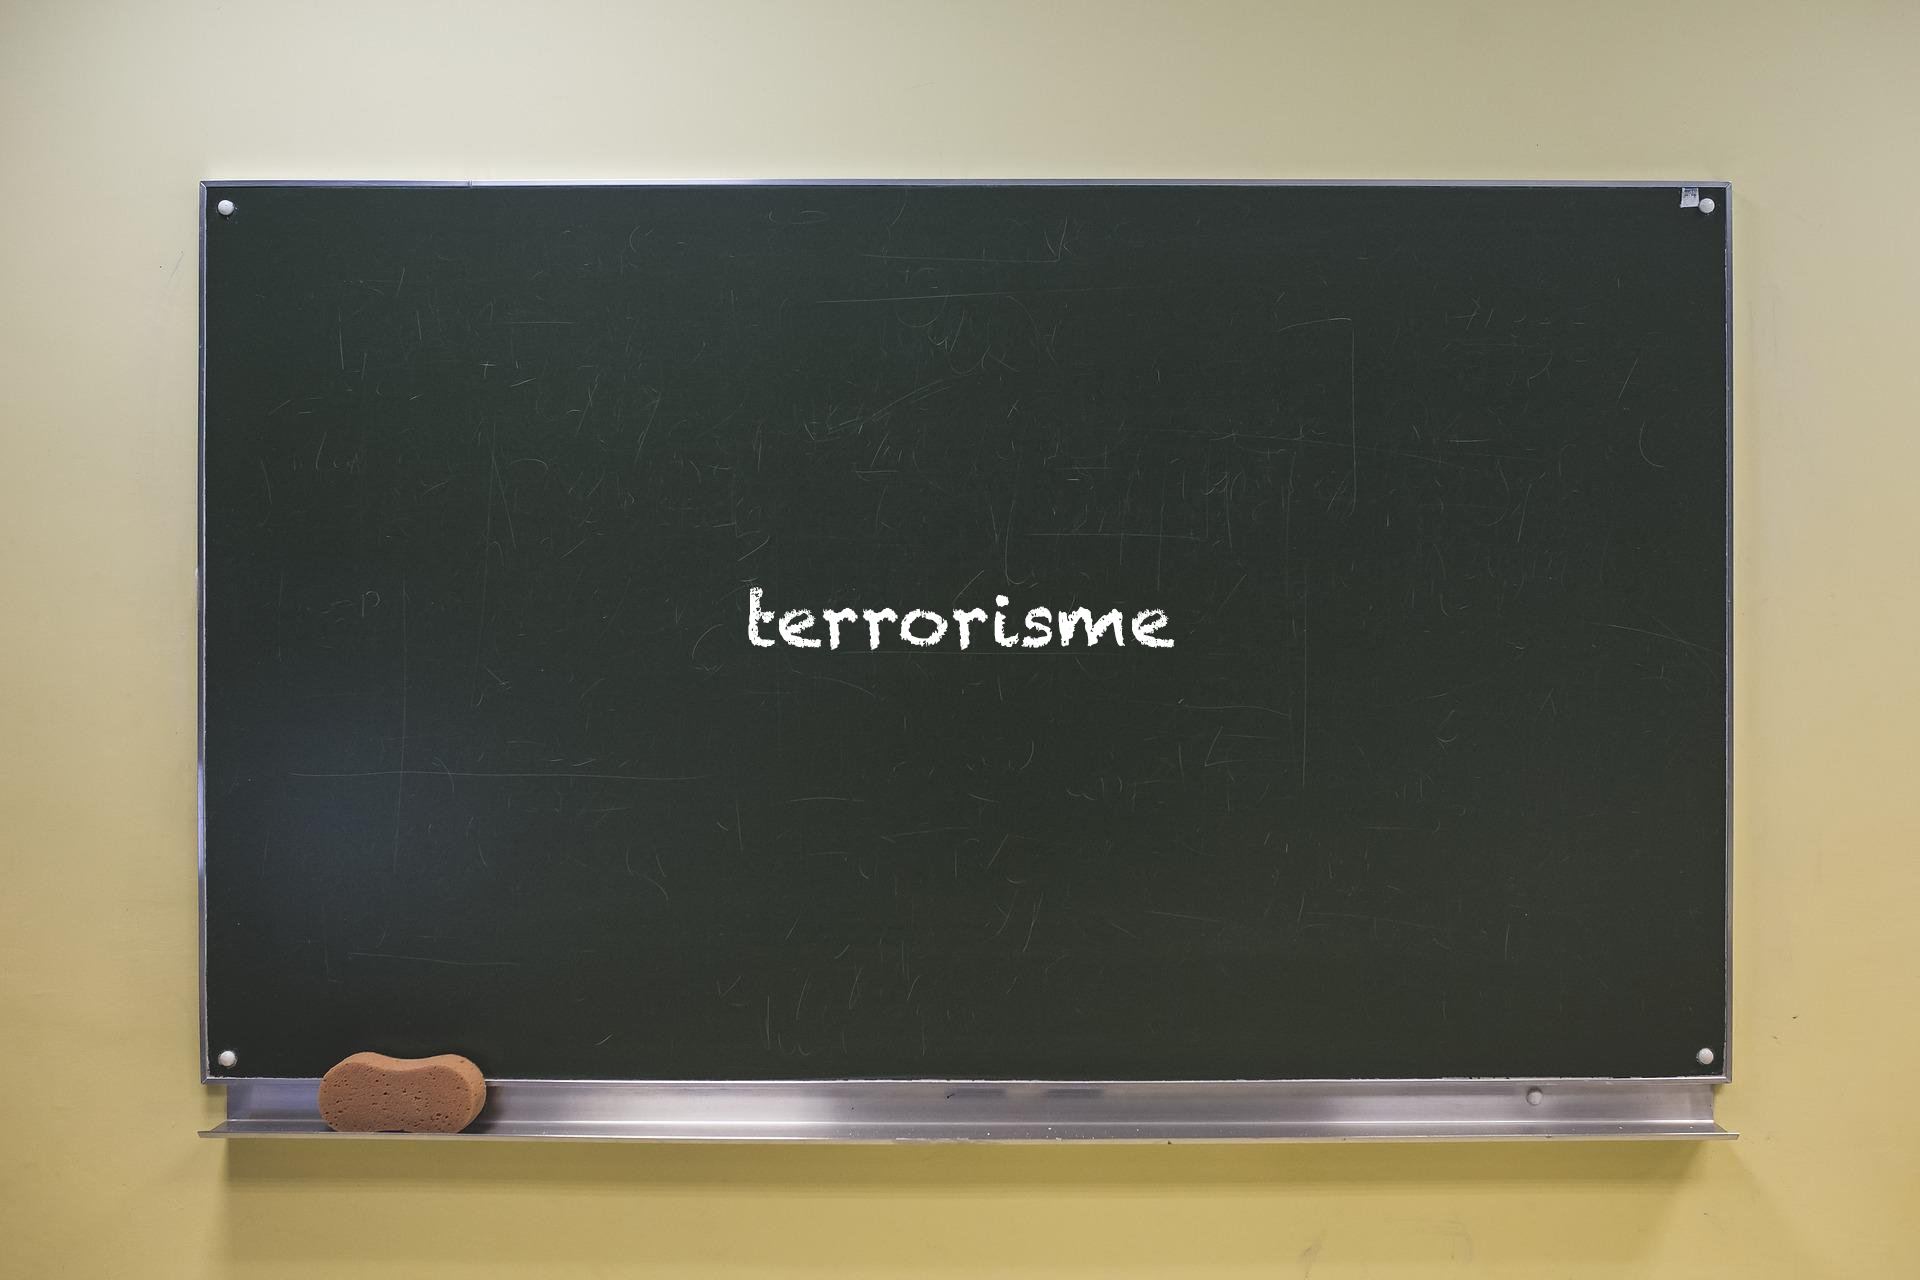 Hoe lessen over terrorisme angst bij leerlingen kunnen verminderen